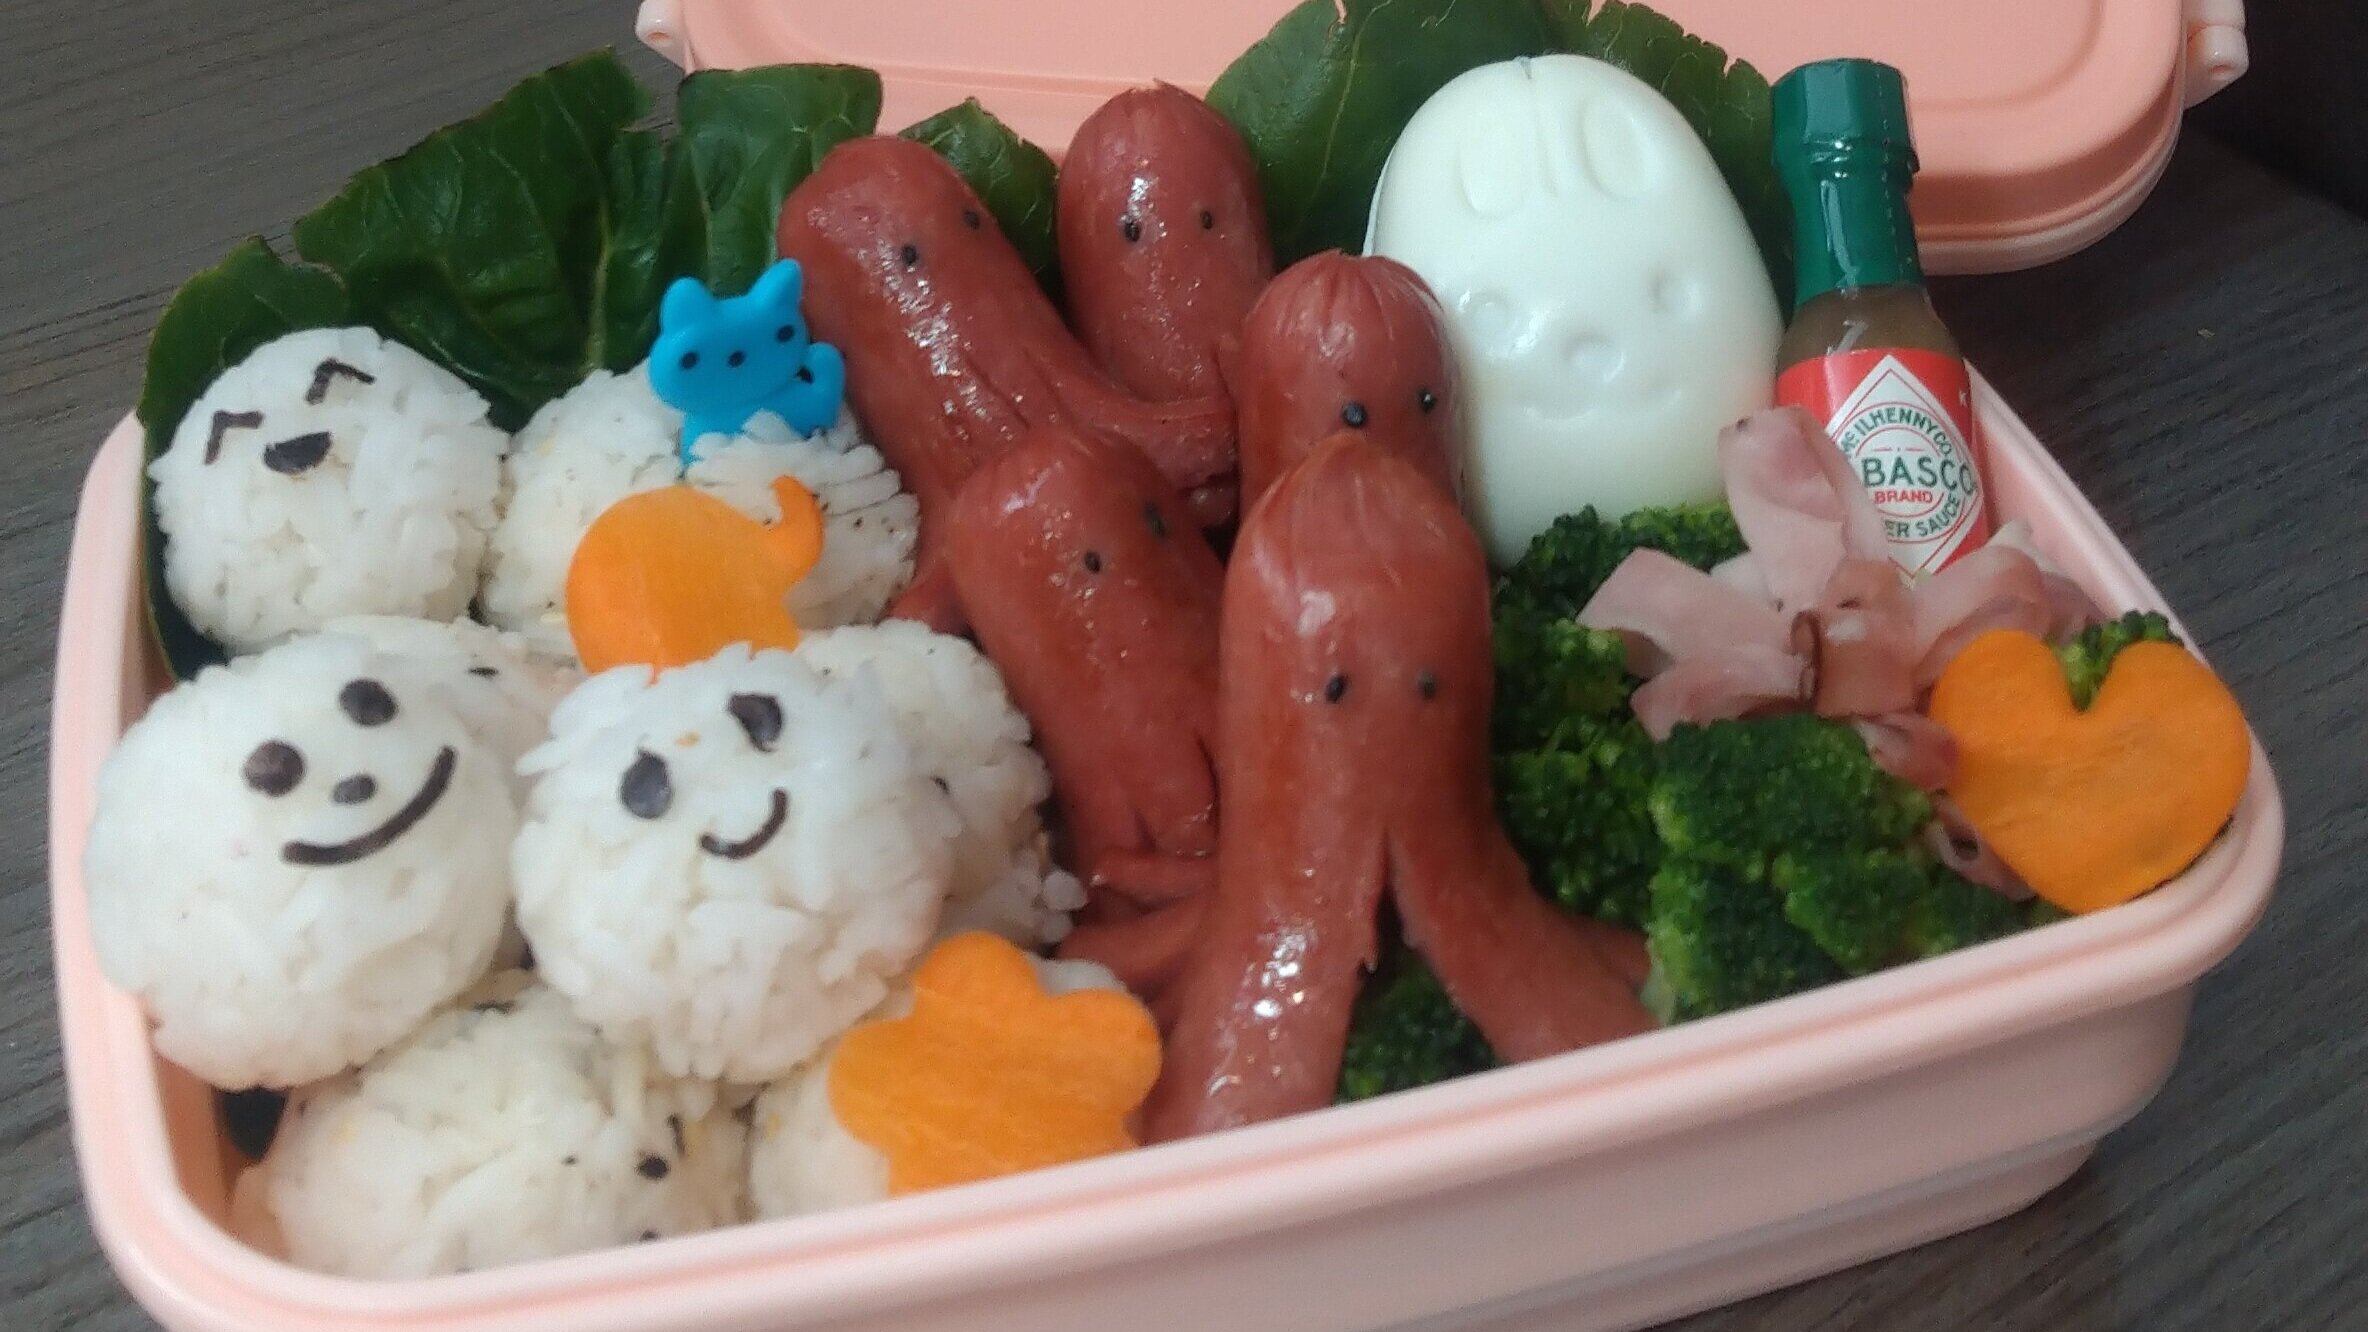 Bento Box Ideas For Kids, Make Cute Hot Dog For Bento